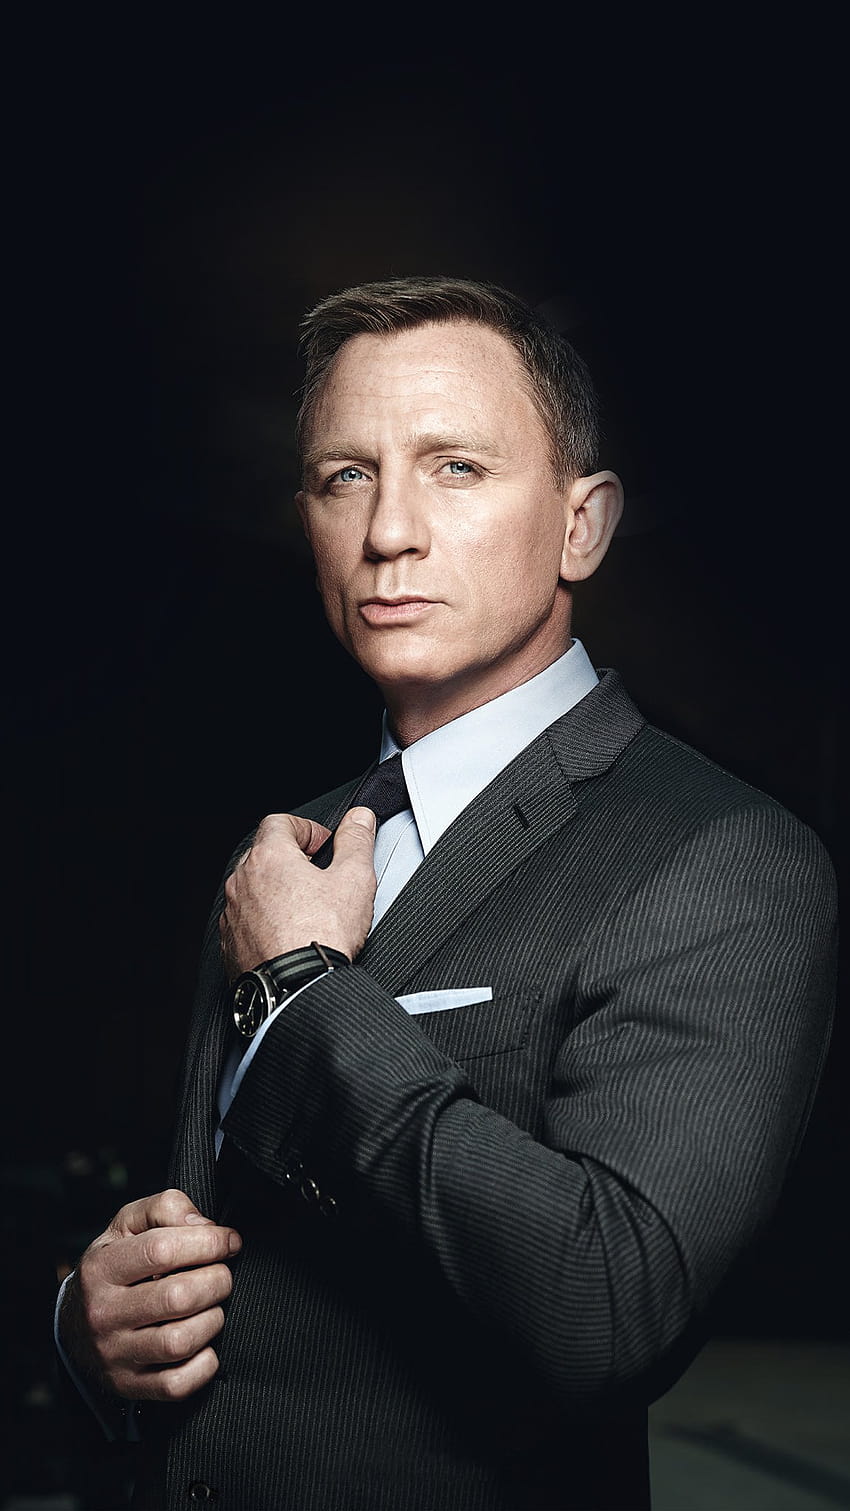 Le costume james bond acteur daniel craig Homme 007 dans james bond 2021 Fond d'écran de téléphone HD